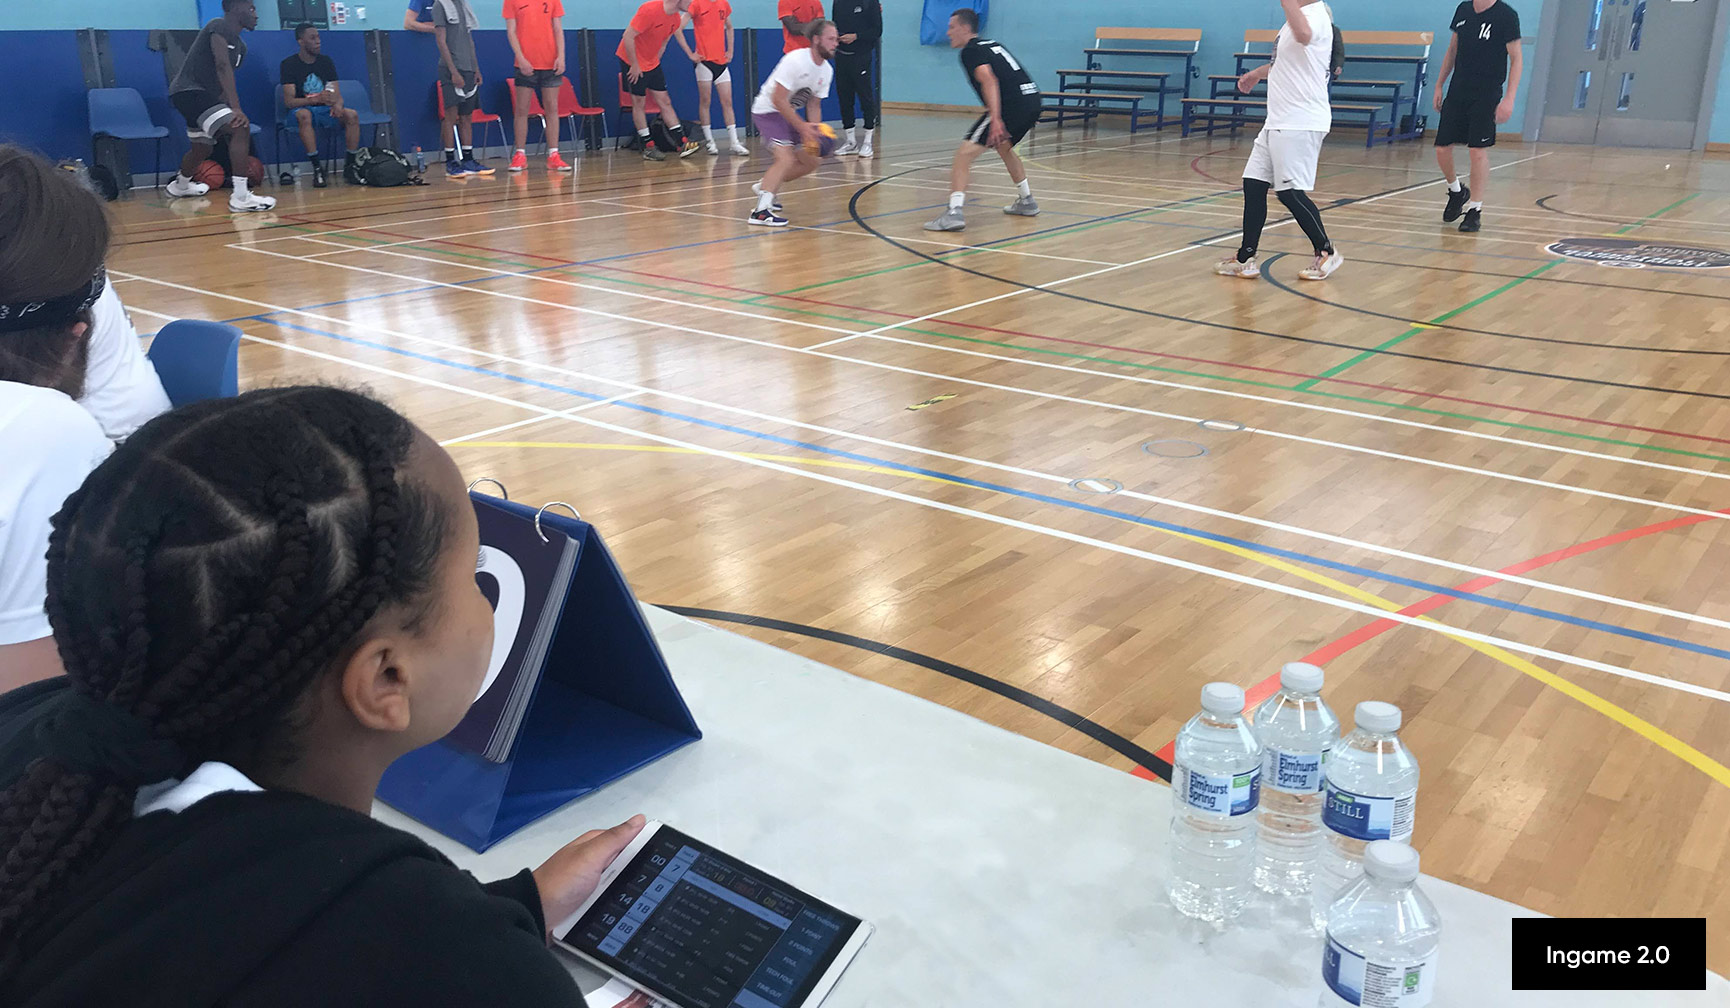 ein Mädchen beobachtet das Basketballspiel am Kampfgericht mit einem digitalen Spielbericht